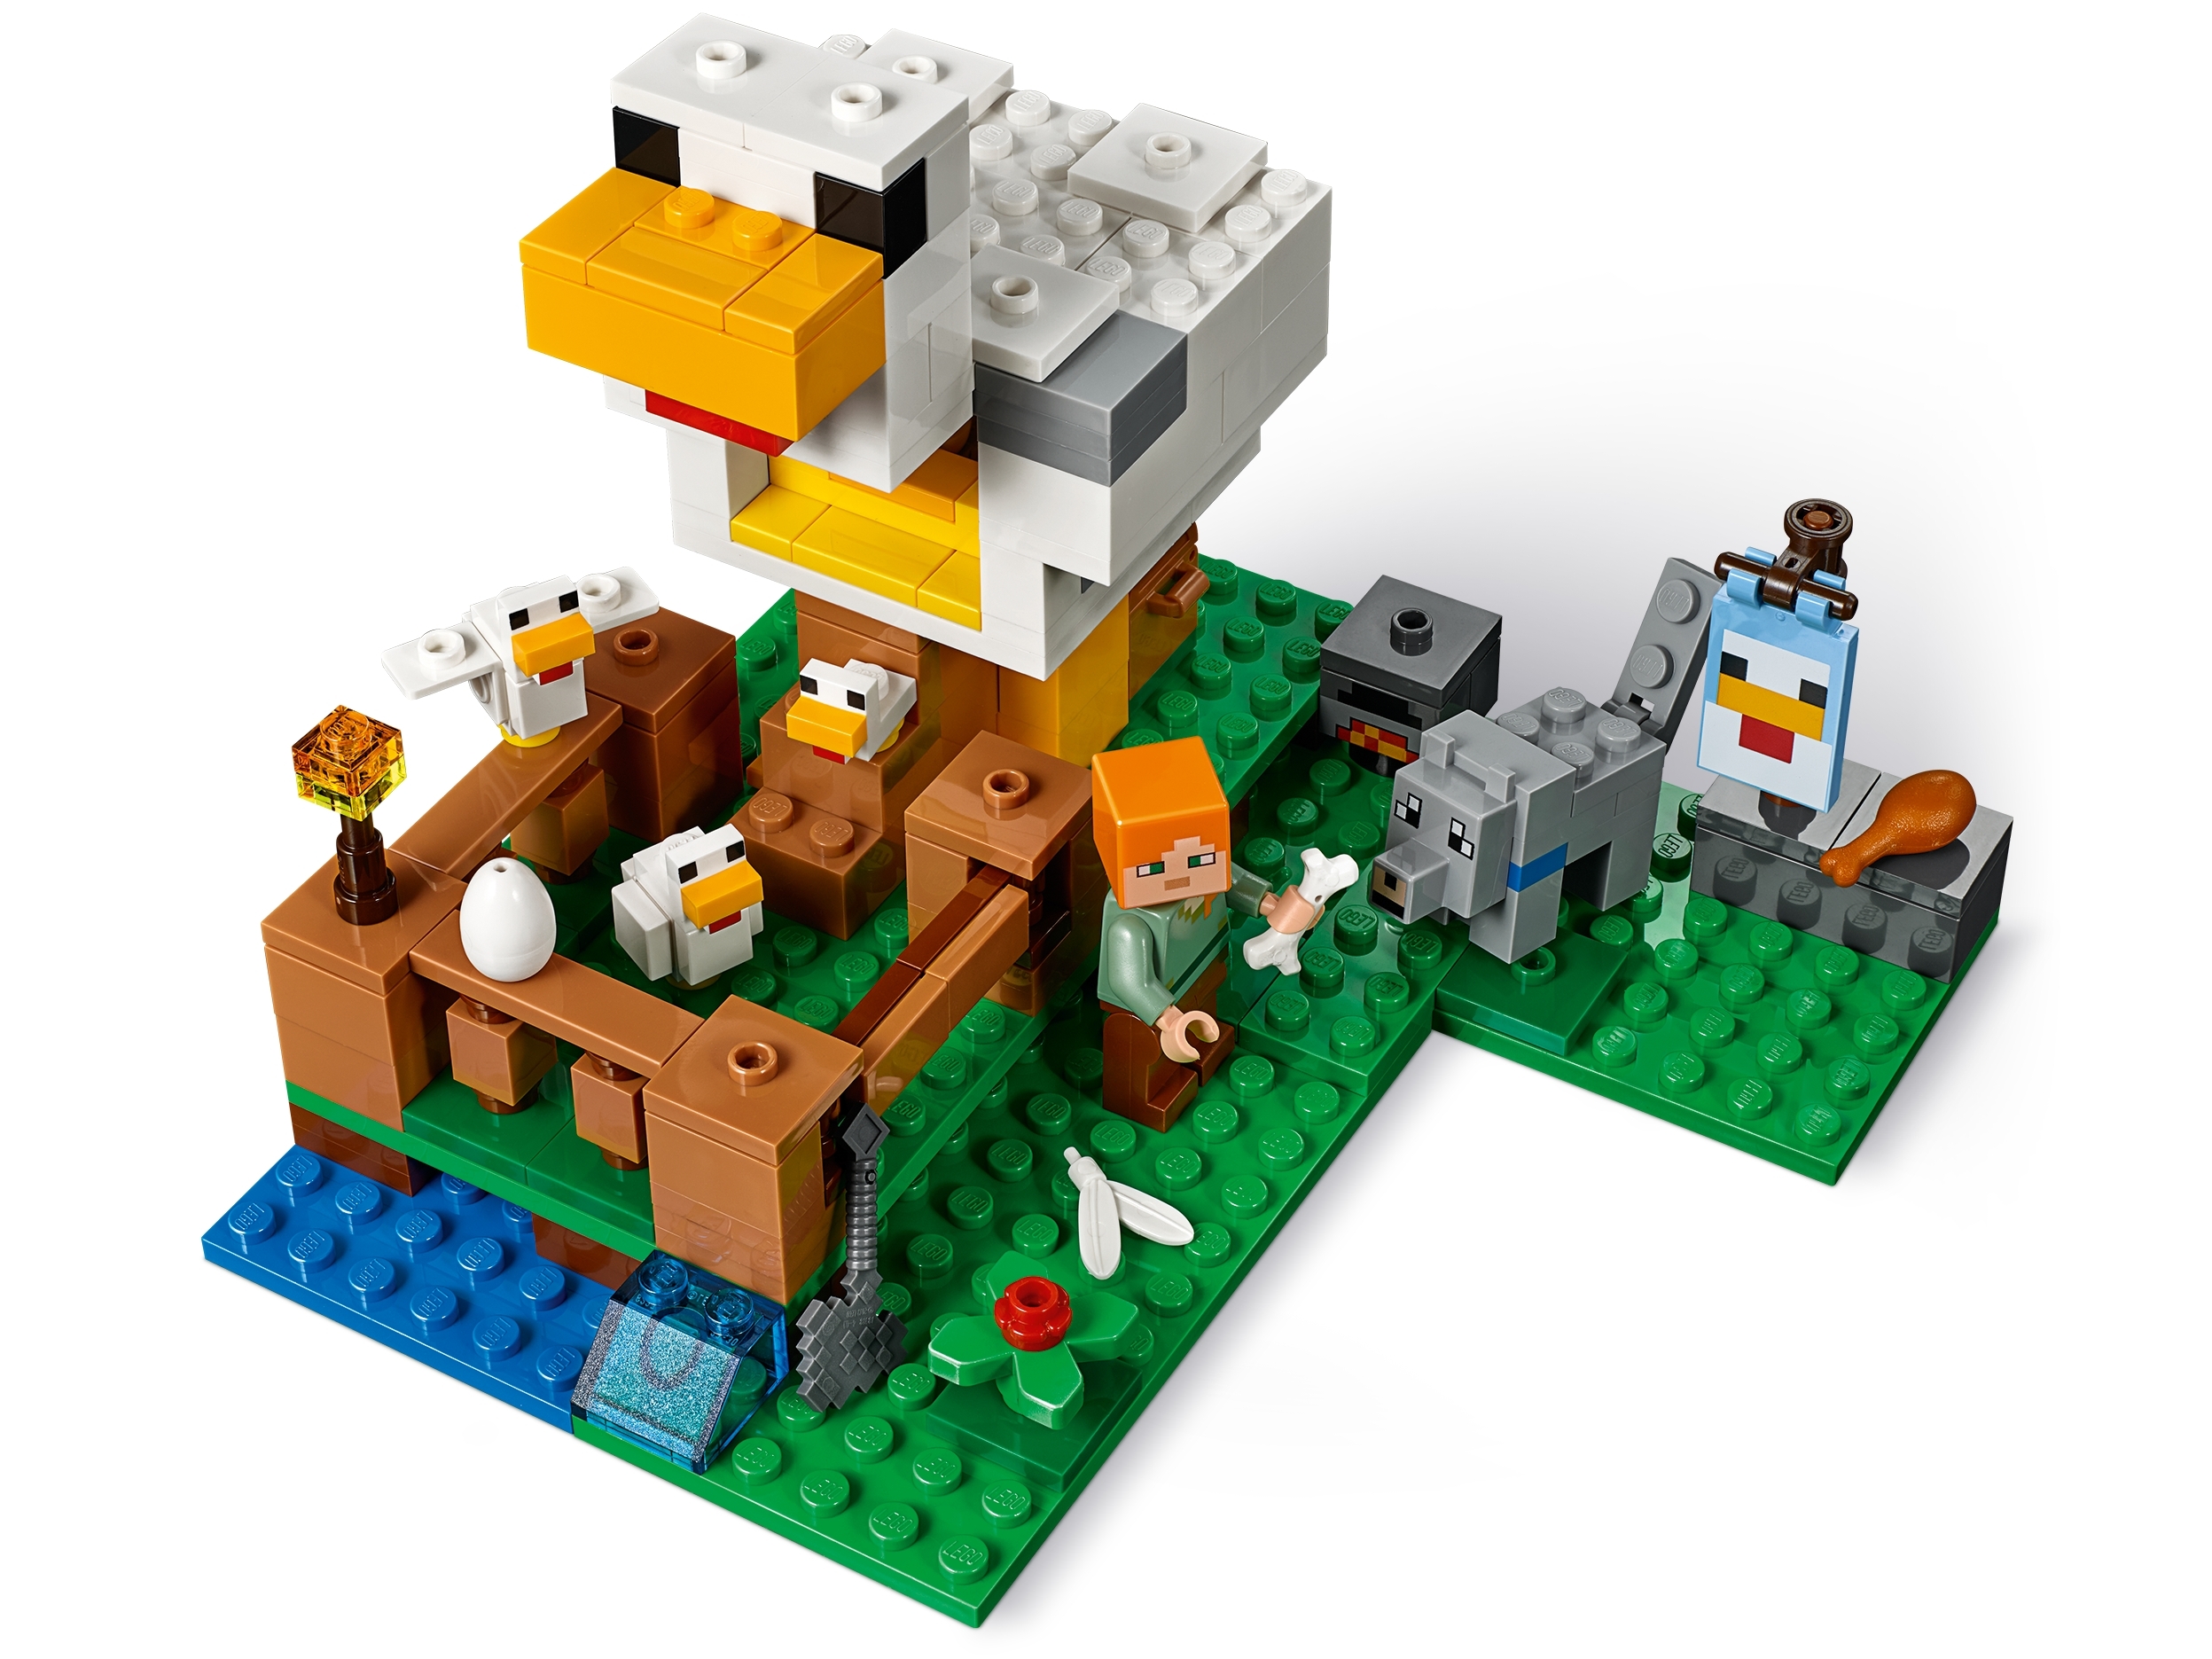 198 Piezas Lego Minecraft The Chicken Coop 21140 